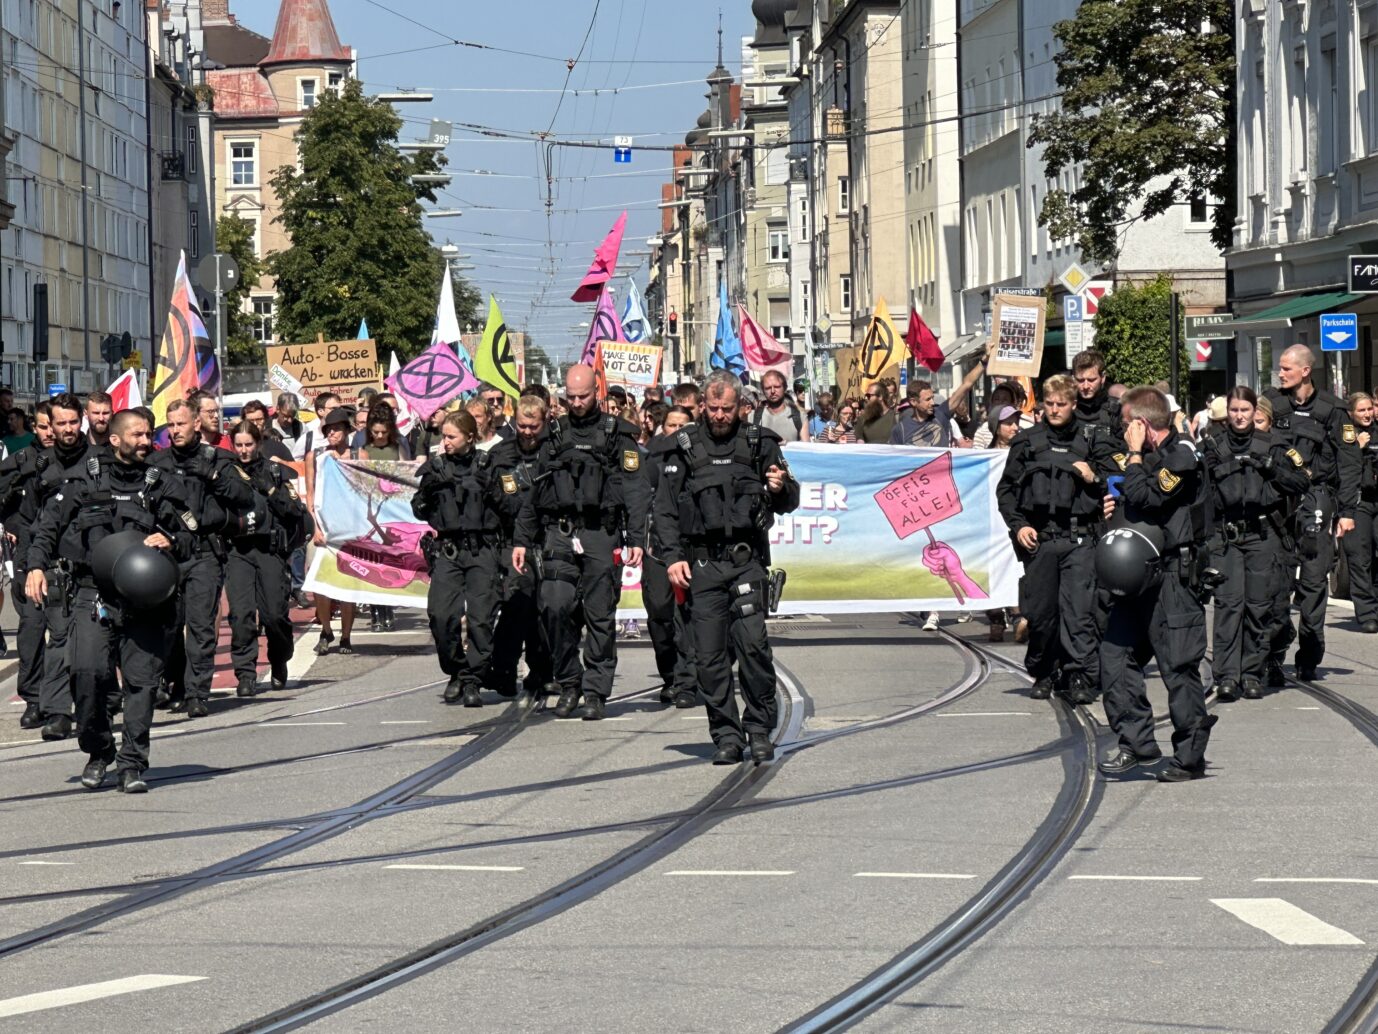 Linksradikale formieren ihren Demonstrationszug am Wochenende in München gegen die Internationale Automobilausstellung IAA